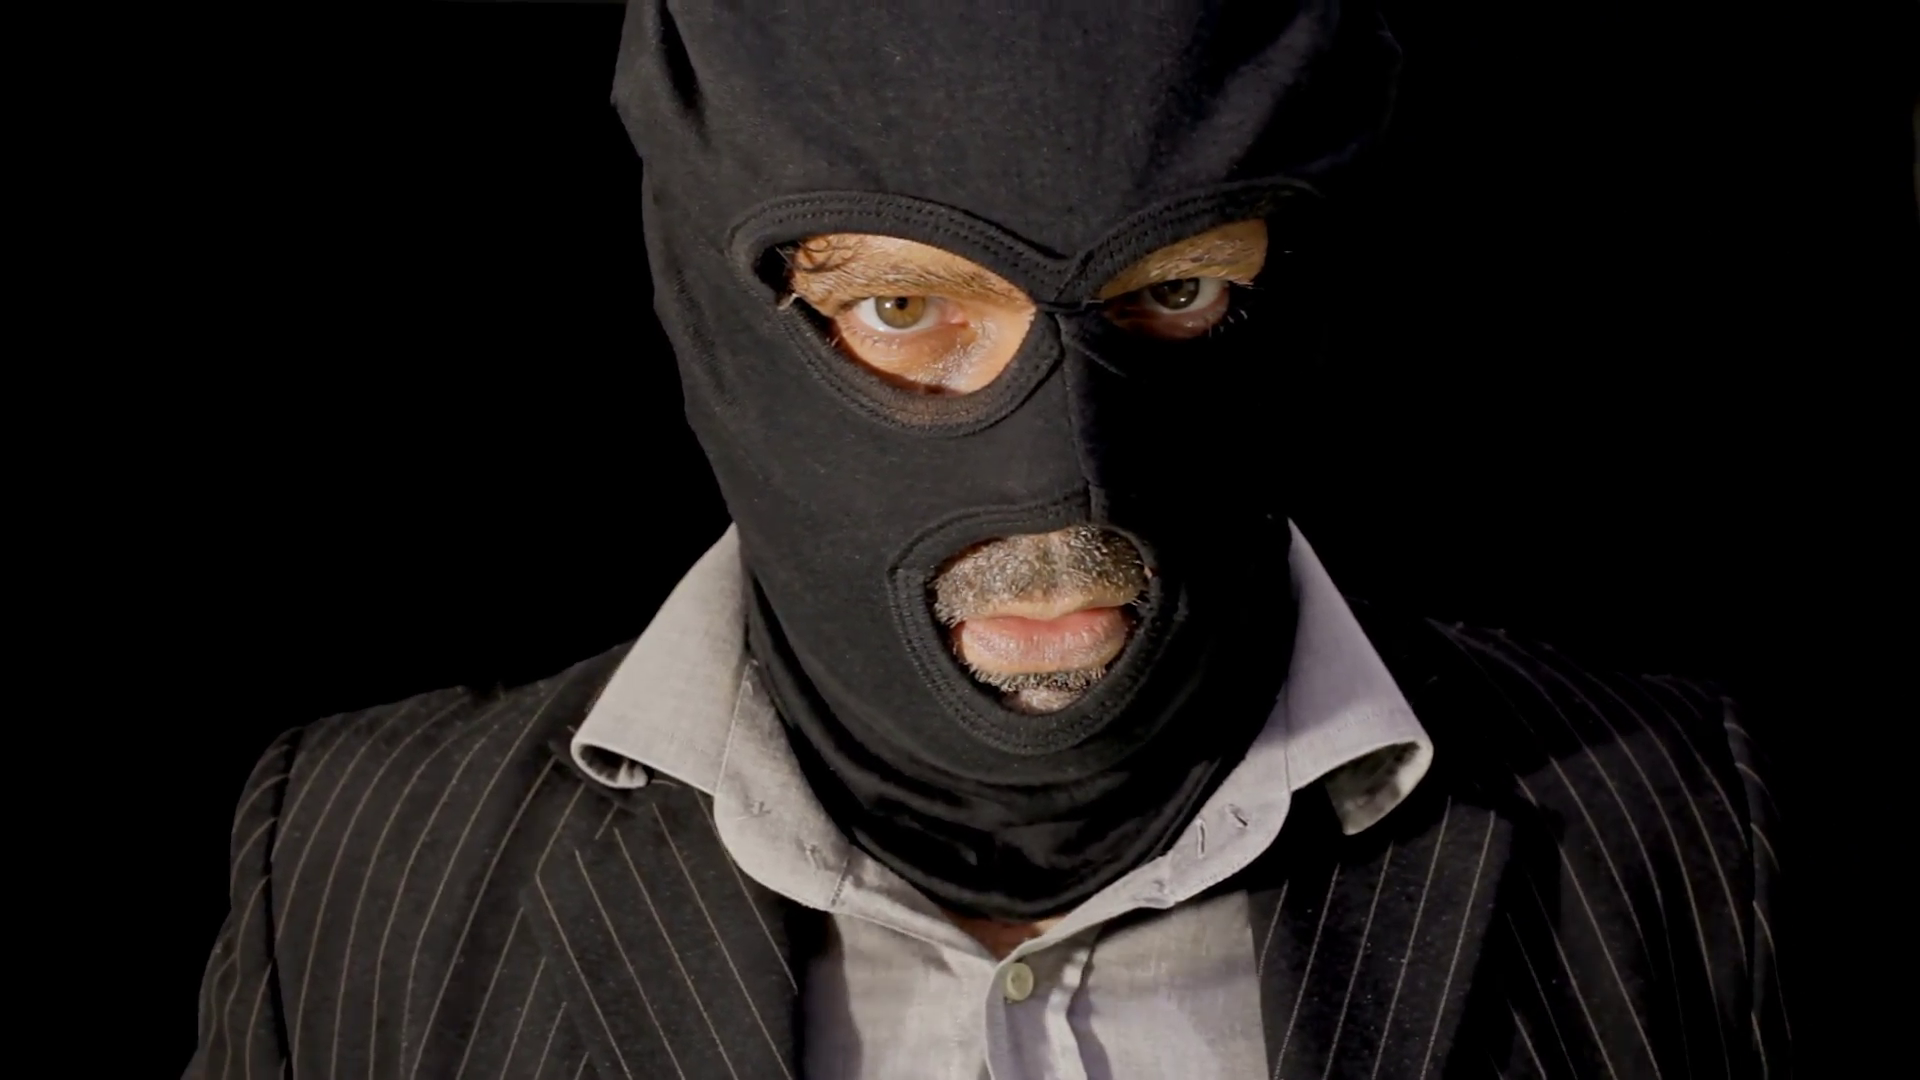 Анонимные объявления masked. Маскед Мэн. Бандиты в масках. Человек в черной маске. Фото в маске.